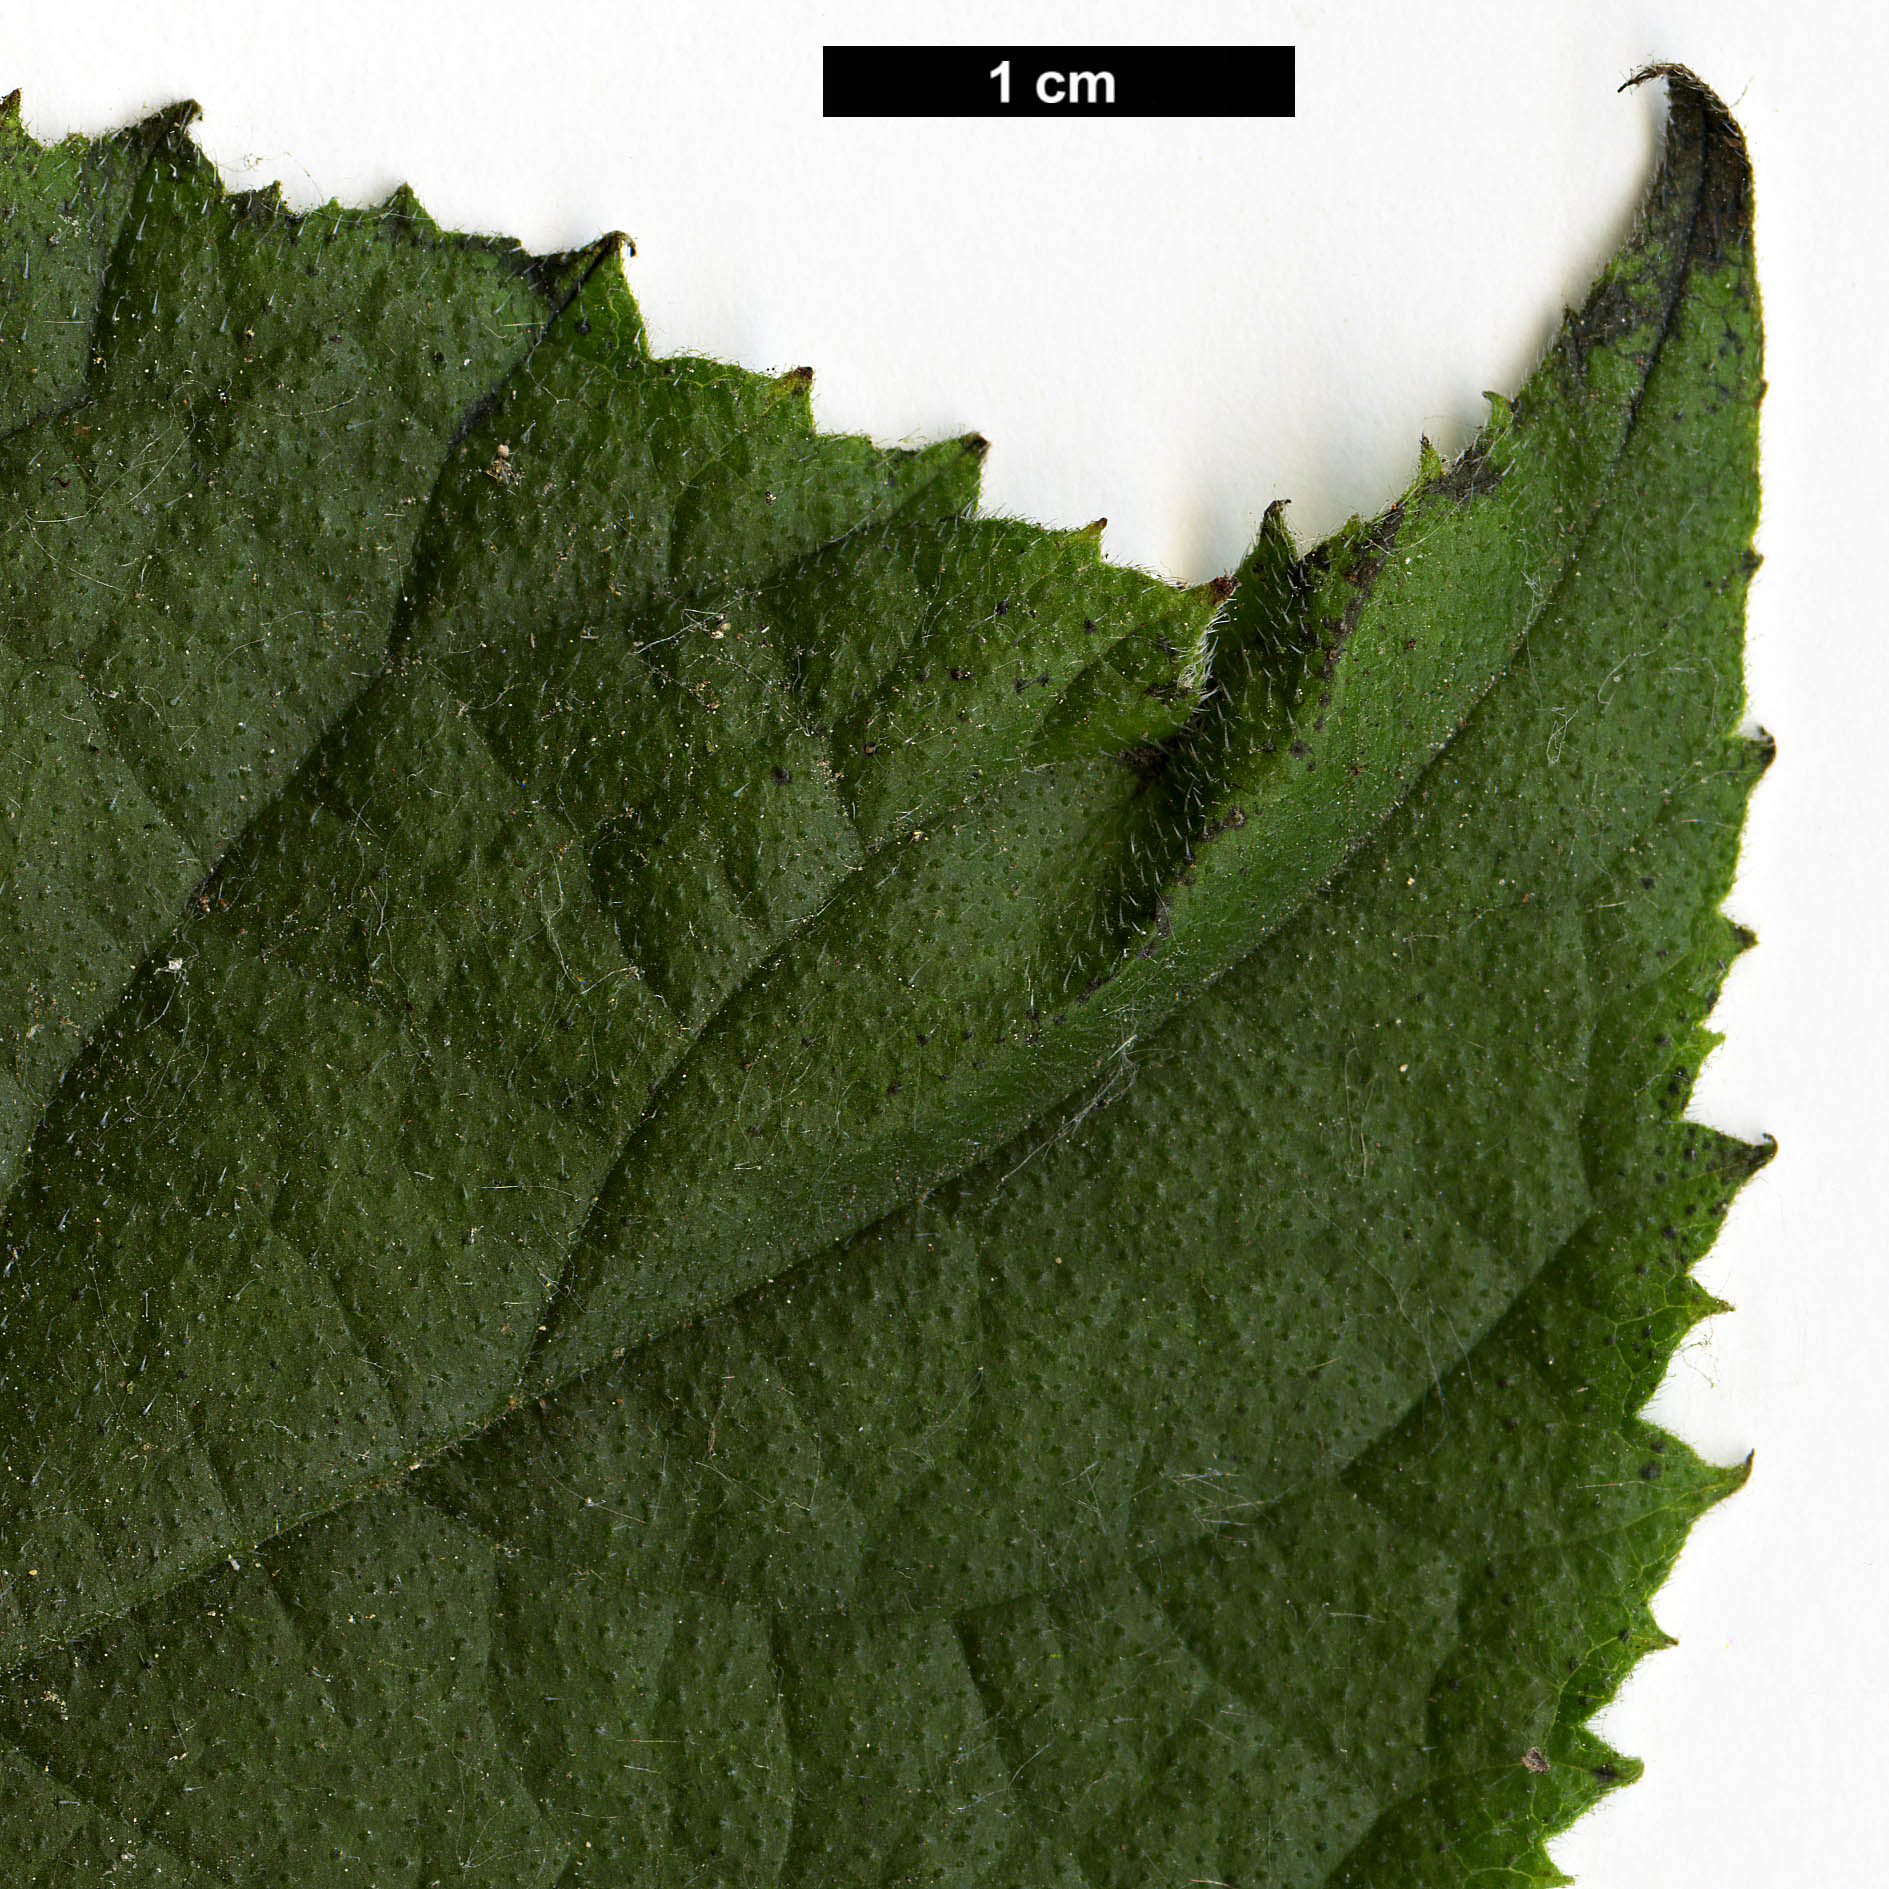 High resolution image: Family: Boraginaceae - Genus: Ehretia - Taxon: dicksonii